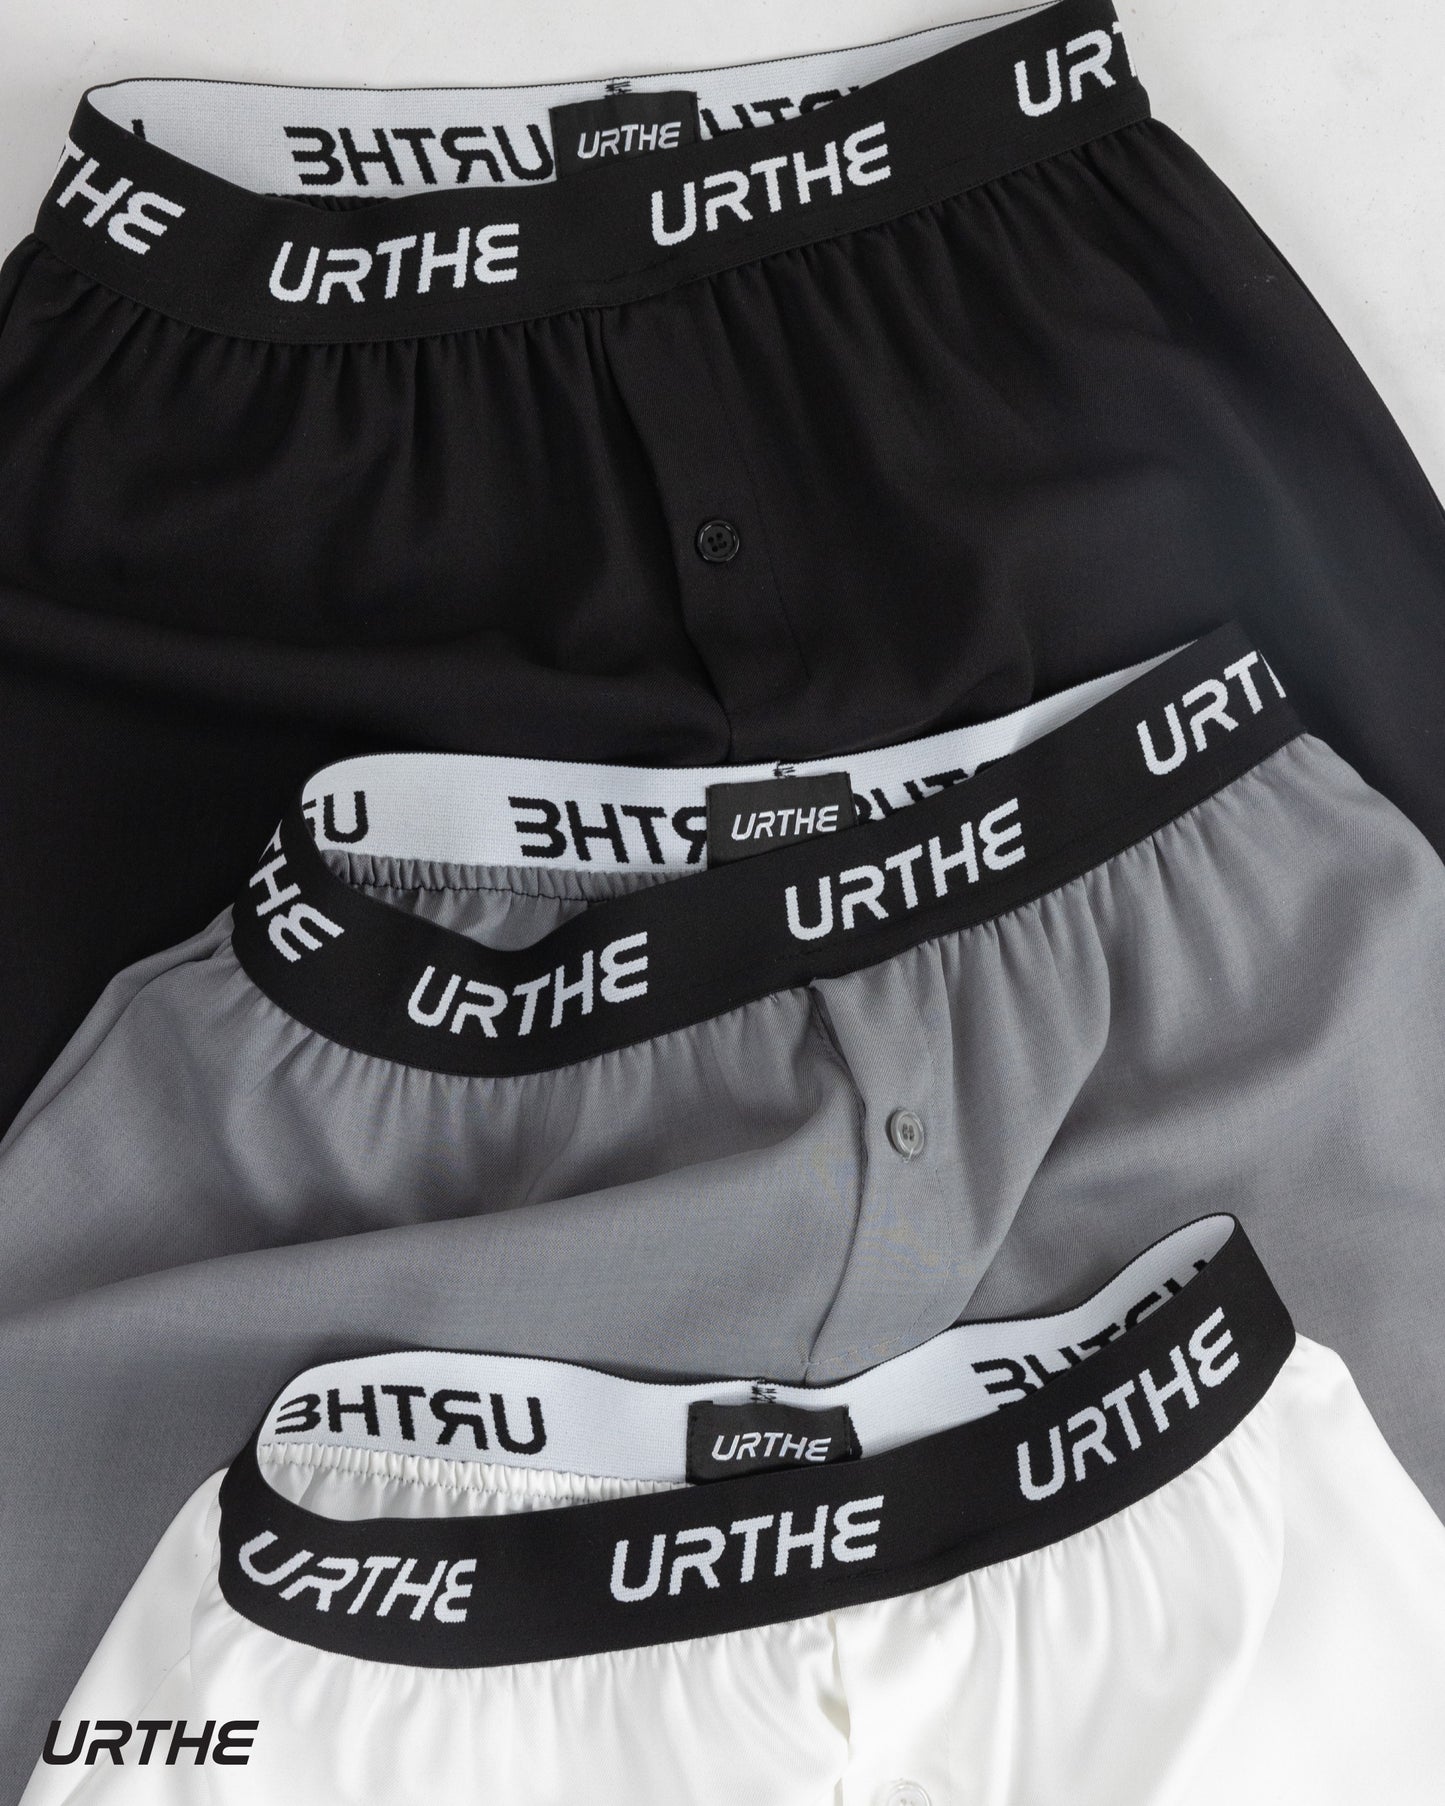 URTHE - กางเกง ขาสั้น เอวยางยืด รุ่น XER 2.0